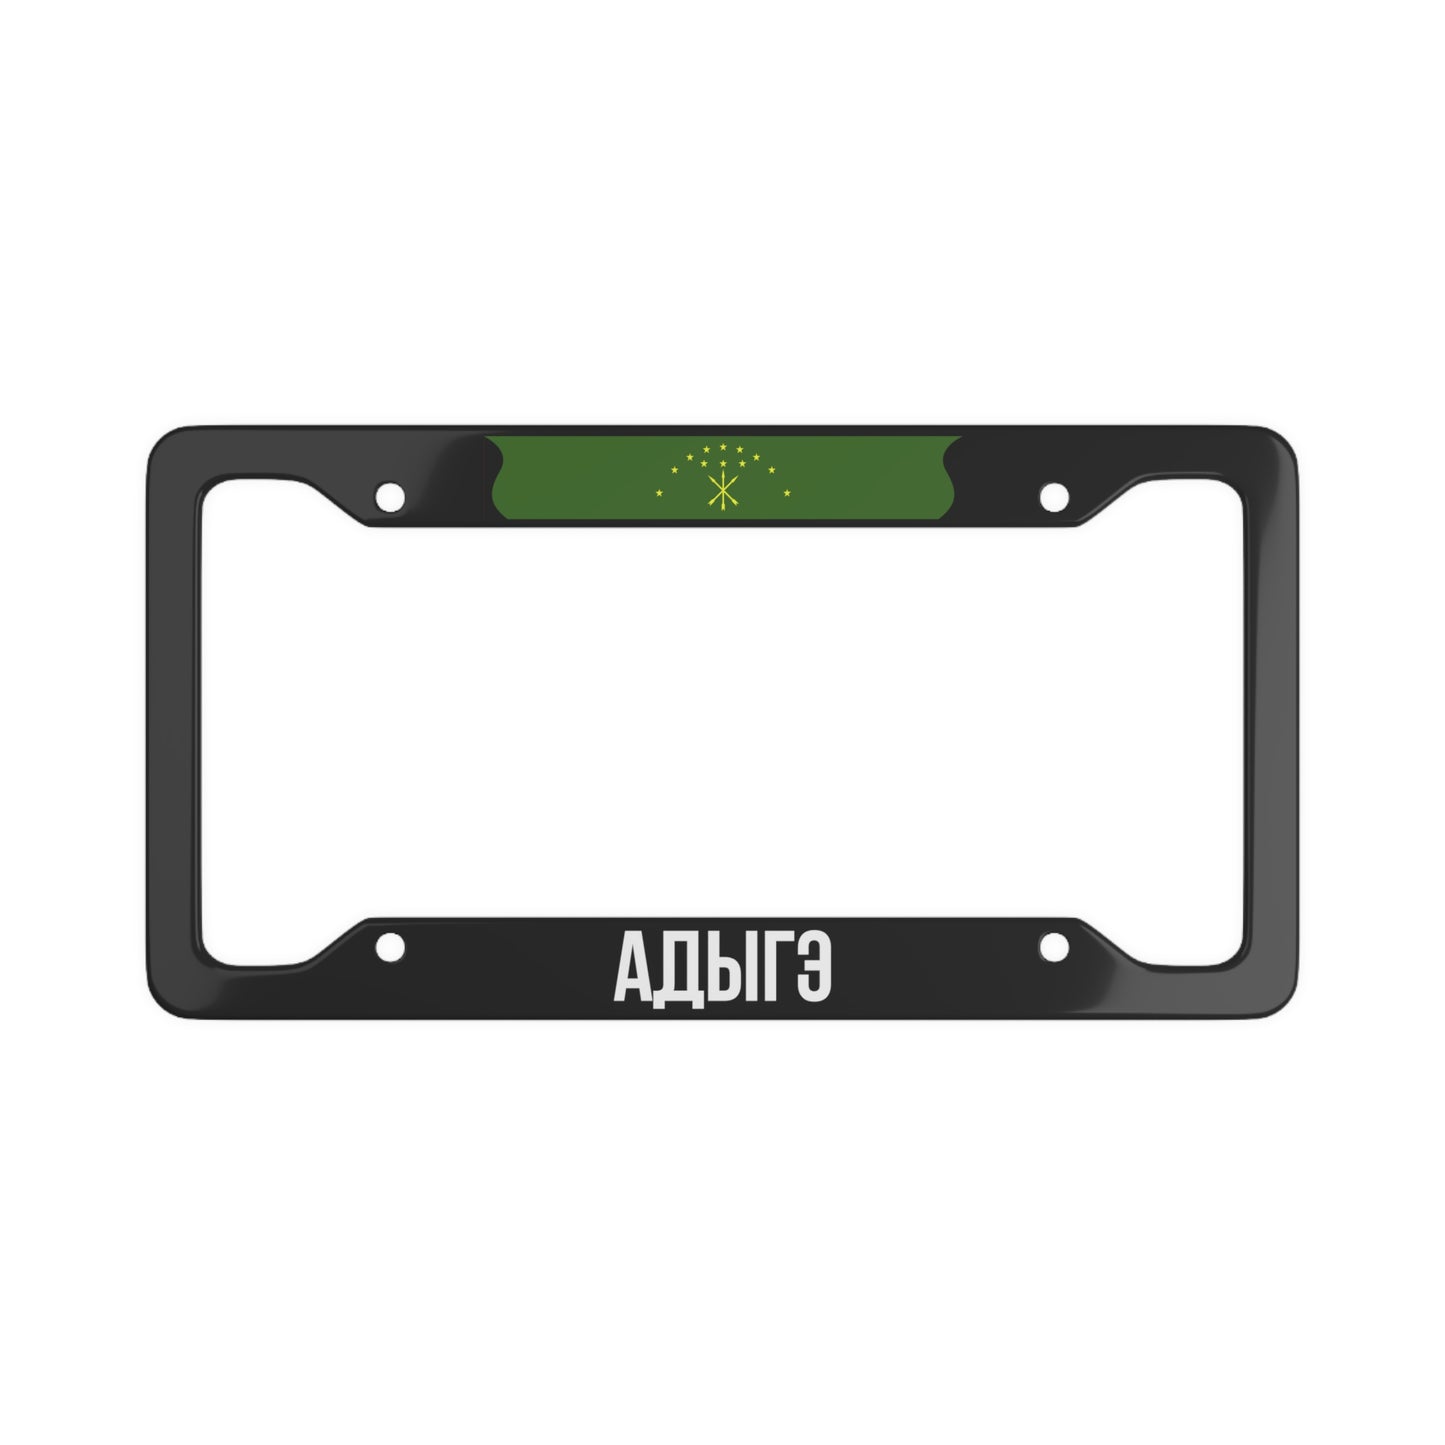 Адыгэ Adyghe License Plate Frame